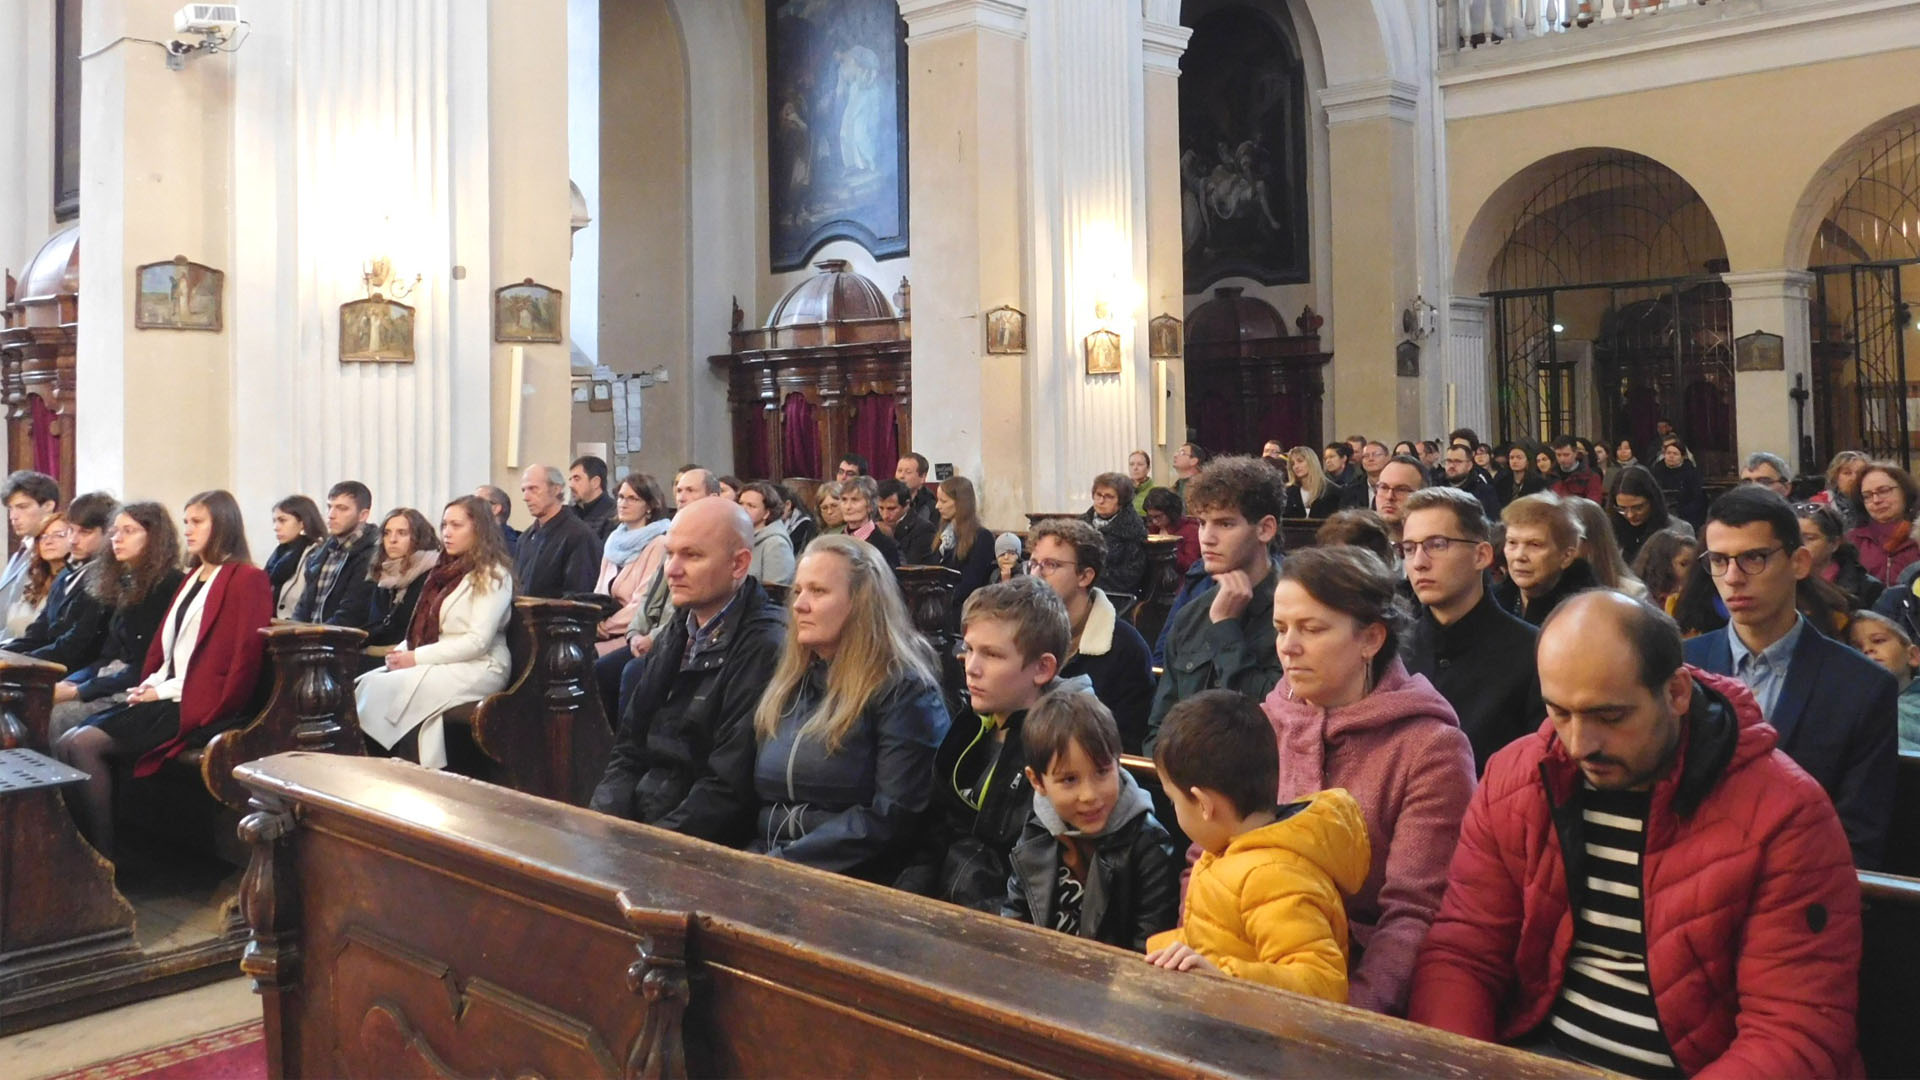 Életet áldozó tanúságtételre emlékeztünk, és a katolikus egyetemisták közösségét ünnepeltük jövőbe tekintéssel